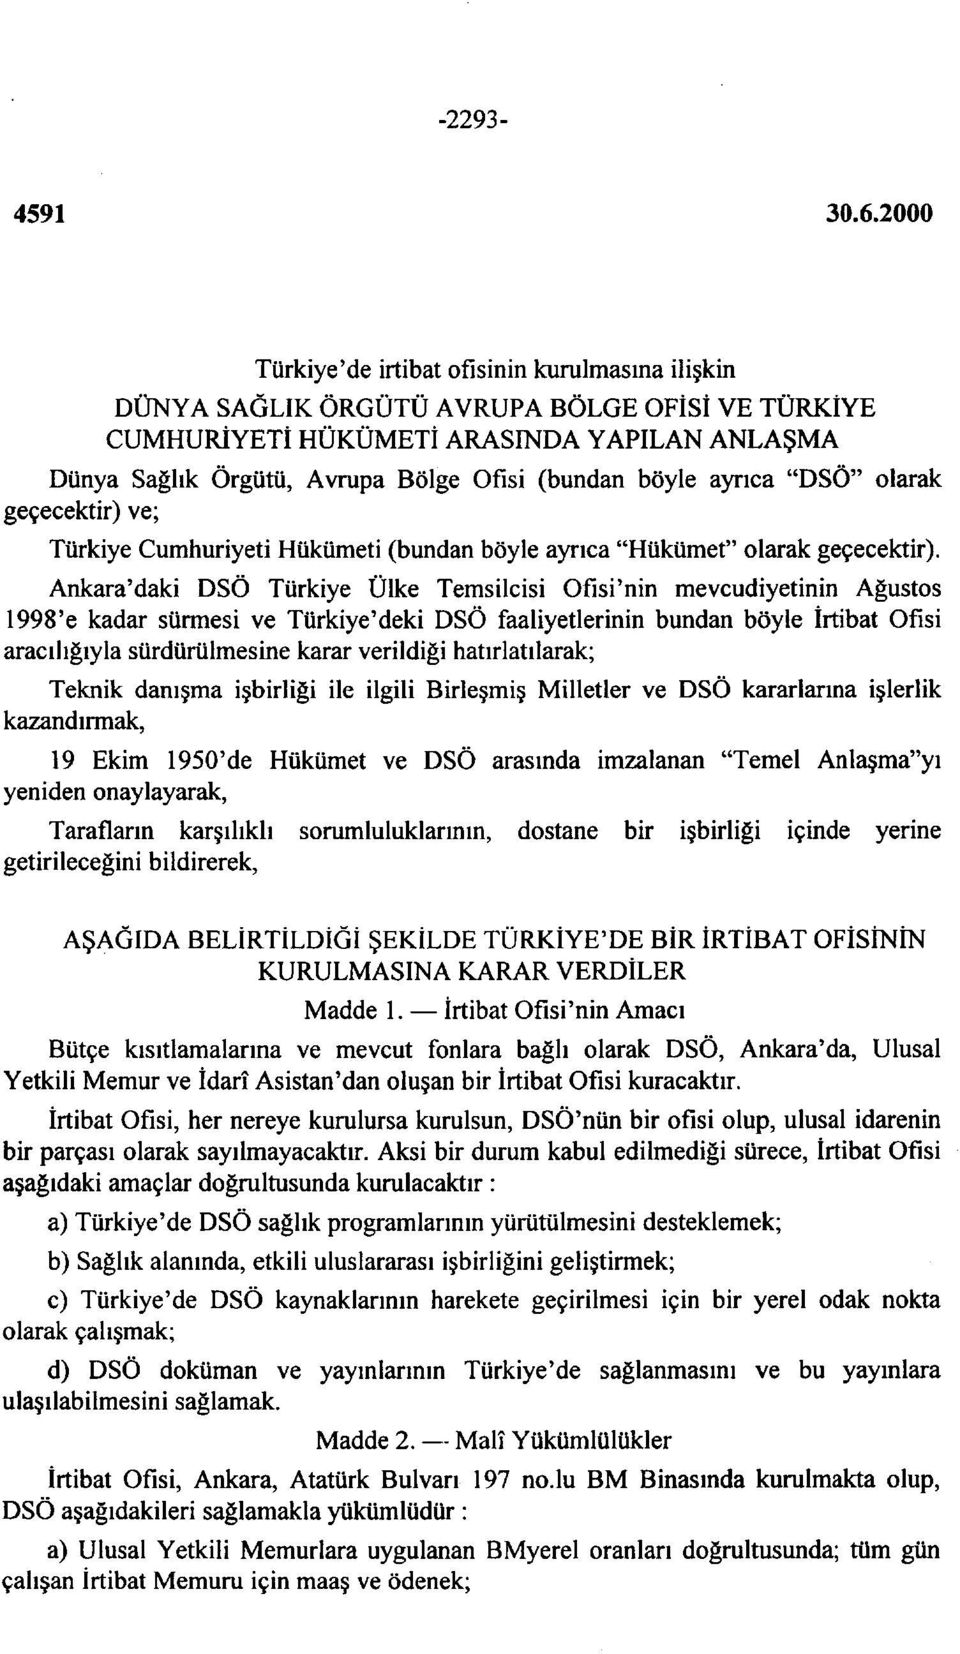 Ankara'daki DSÖ Türkiye Ülke Temsilcisi Ofisi'nin mevcudiyetinin Ağustos 1998'e kadar sürmesi ve Türkiye'deki DSÖ faaliyetlerinin bundan böyle İrtibat Ofisi aracılığıyla sürdürülmesine karar